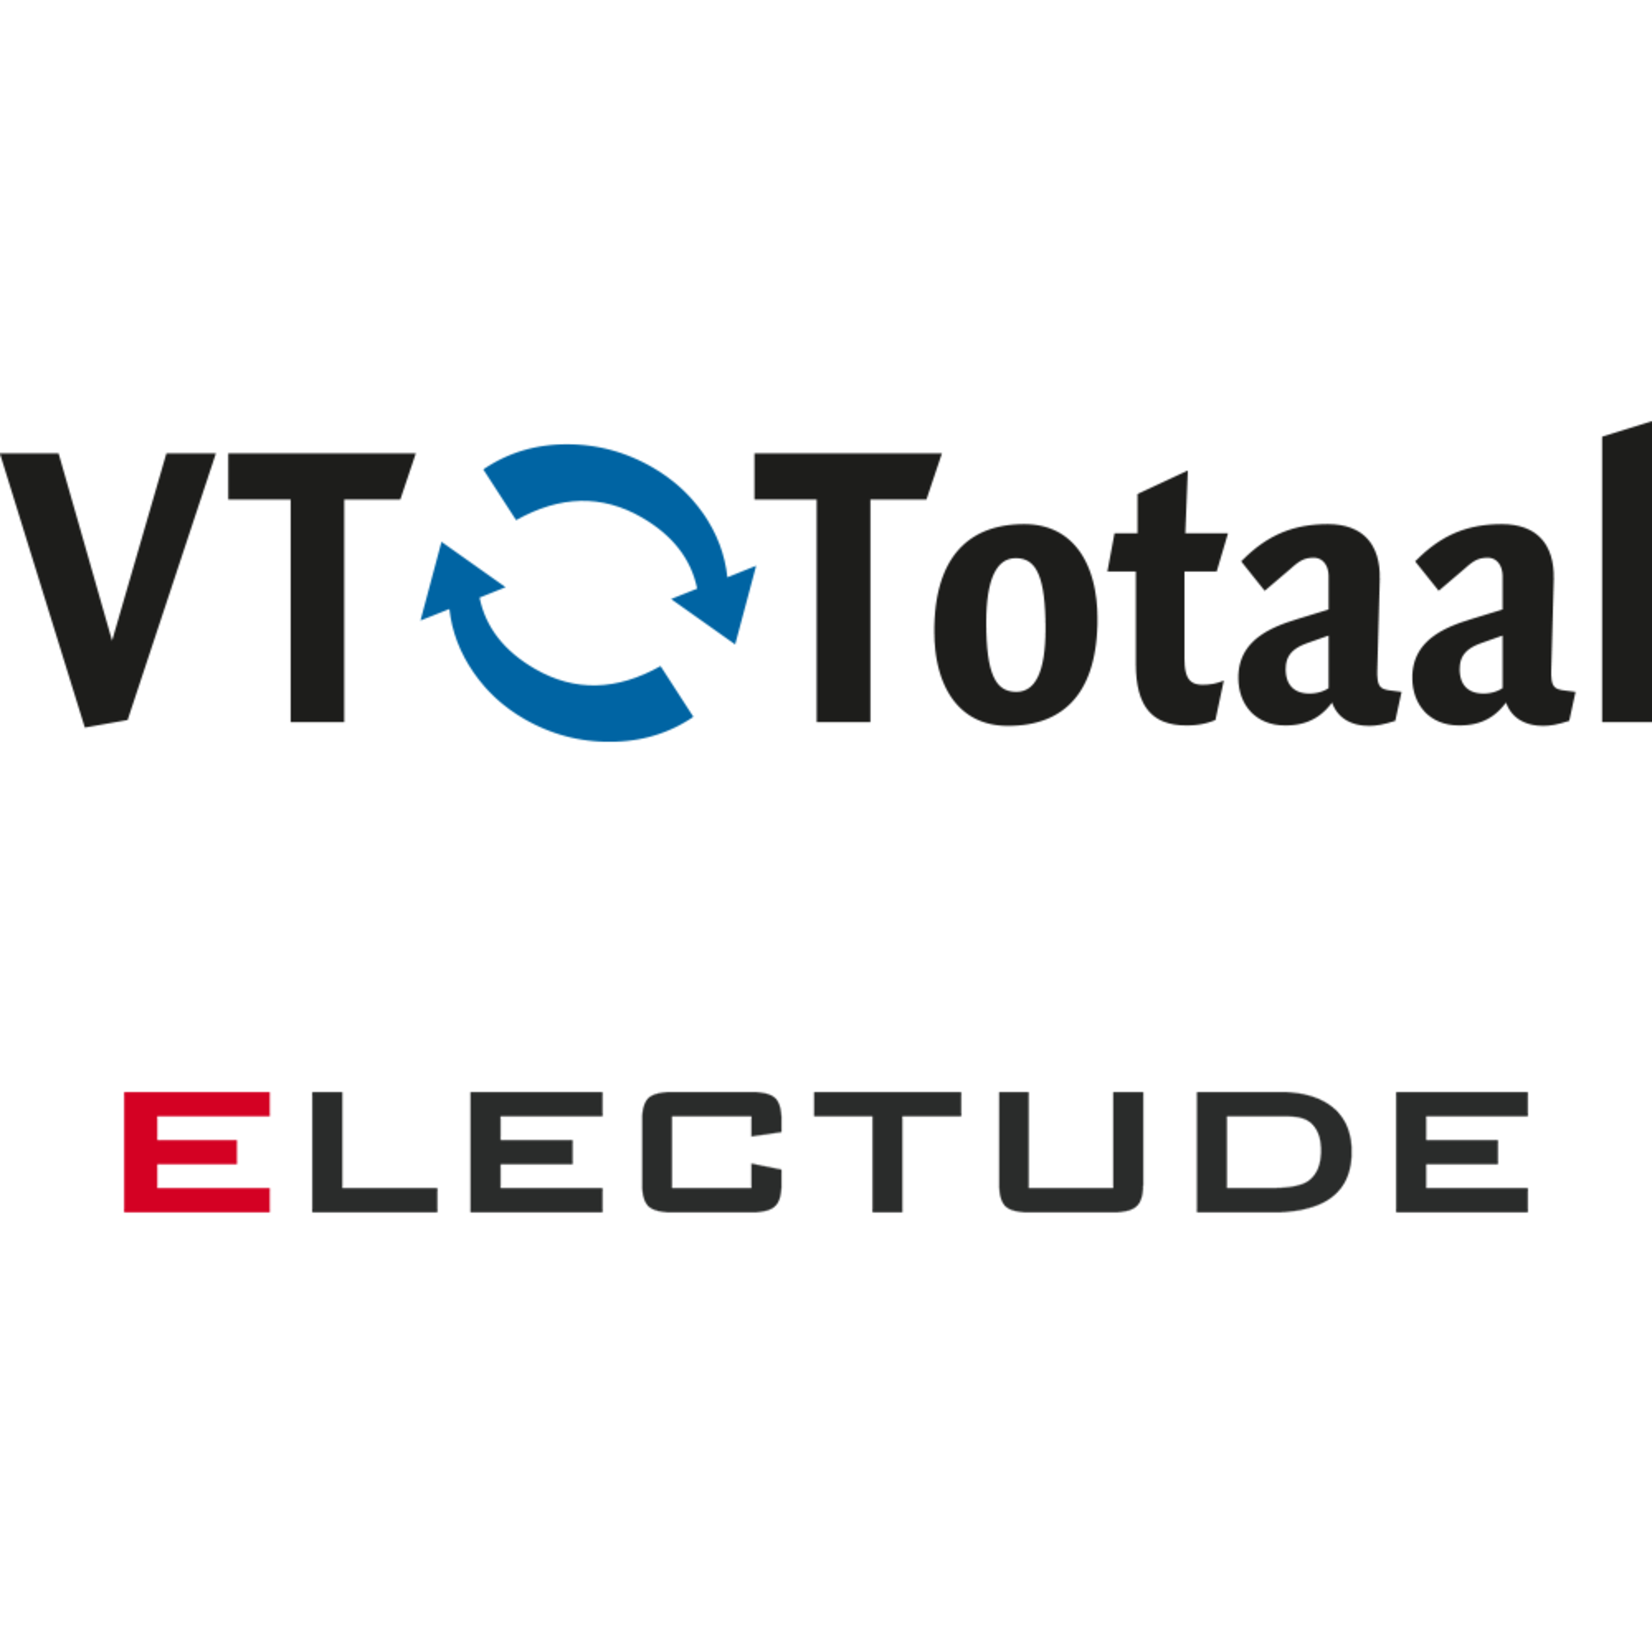 Licentie Electude - MK Autotechniek, VT-Totaal only 6 maanden